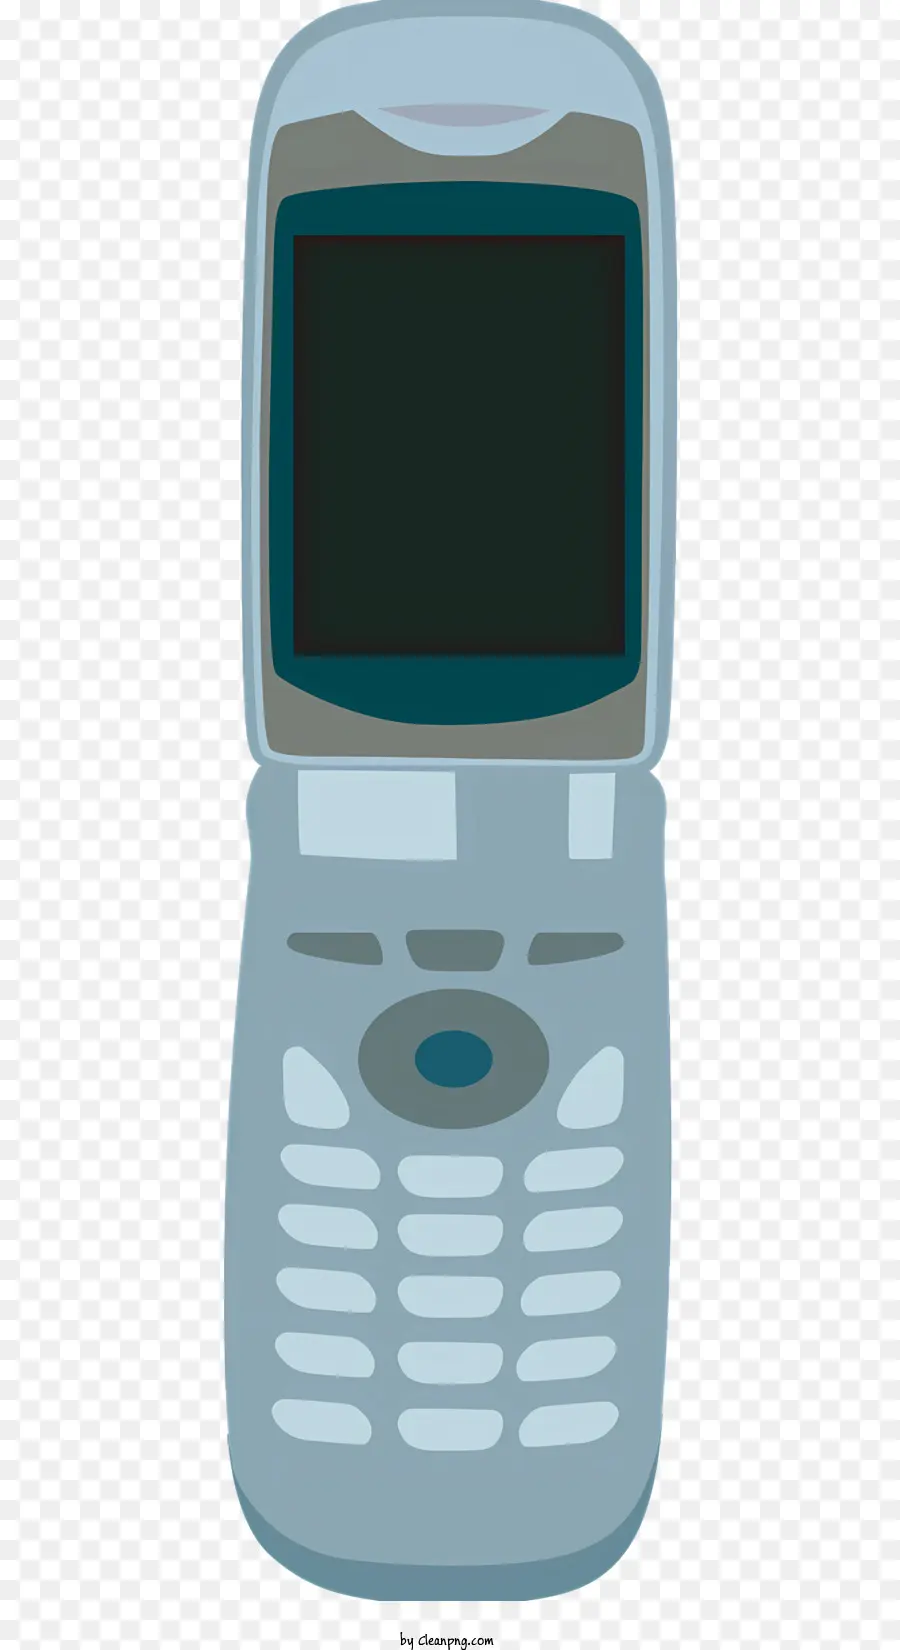 ICON Tragbares elektronisches Geräte-Geräte-Geräte-Handy-Anrufe Textnachrichten - Kleines, nicht funktionsfähiges elektronisches Gerät mit weißem Bildschirm